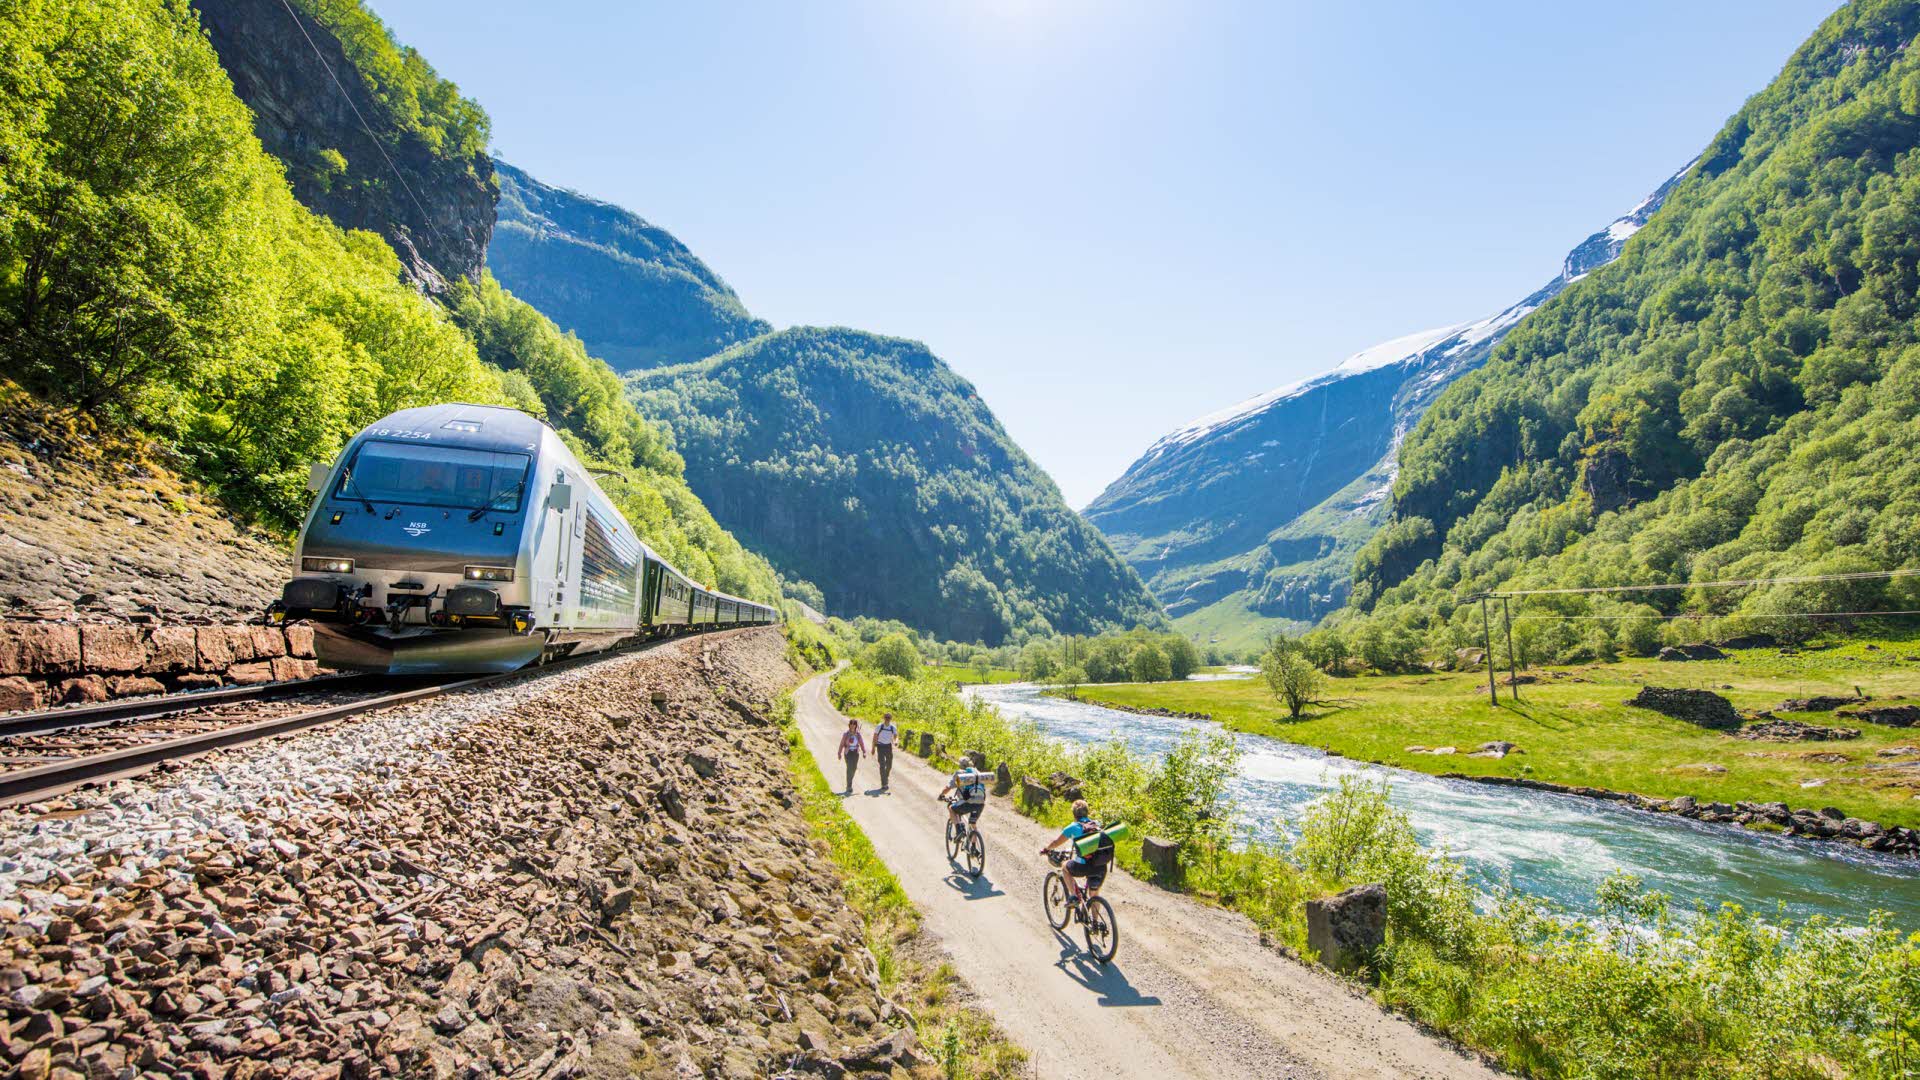 Une journée d’été ensoleillée dans la vallée de Flåm, avec deux cyclistes s’apprêtant à croiser deux randonneurs, entre le train de Flåm et la rivière